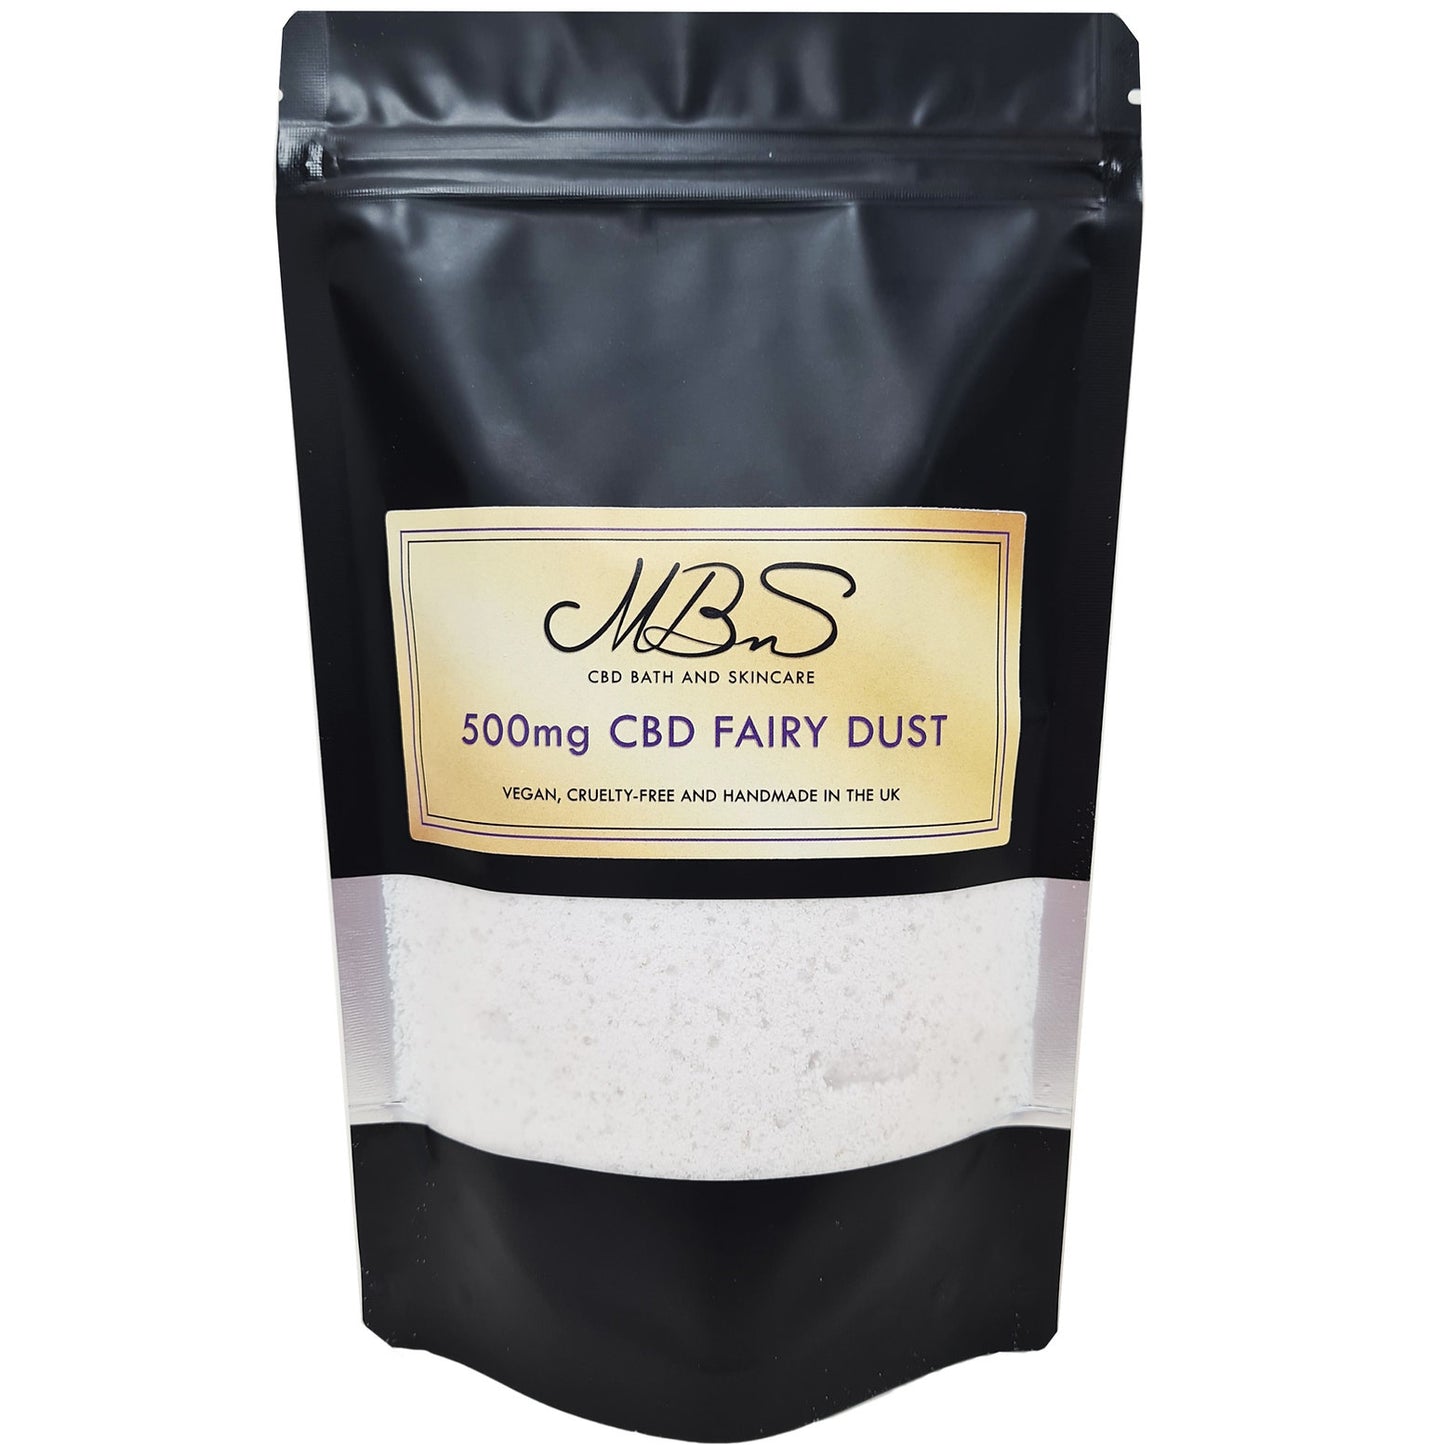 500mg CBD Fairy Dust